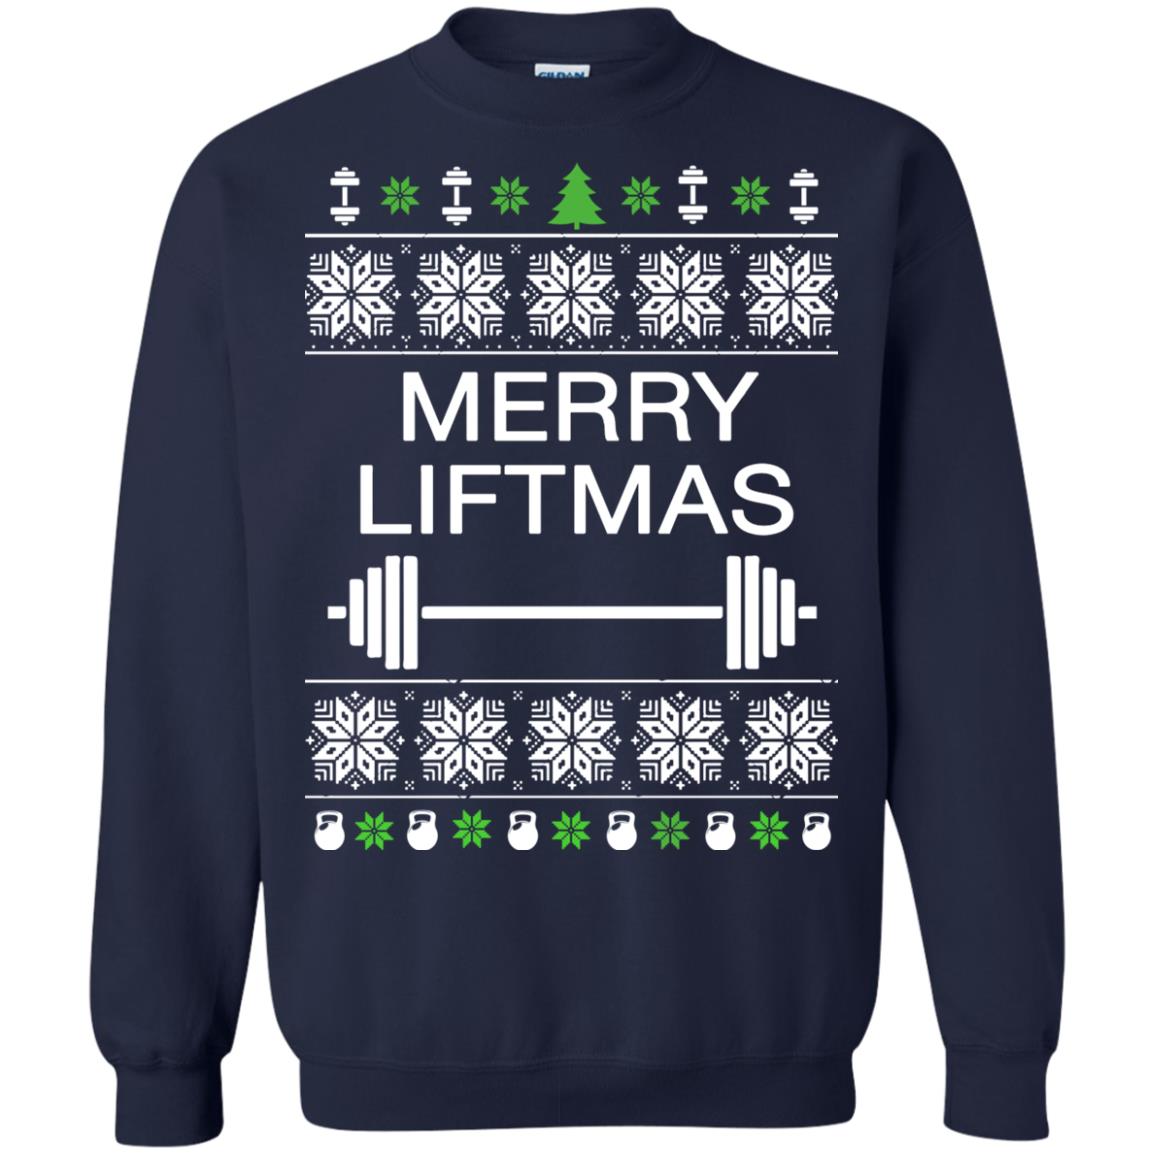 Merry Liftmas Sweater, Ugly Sweatshirt, Long Sleeve - Rockatee